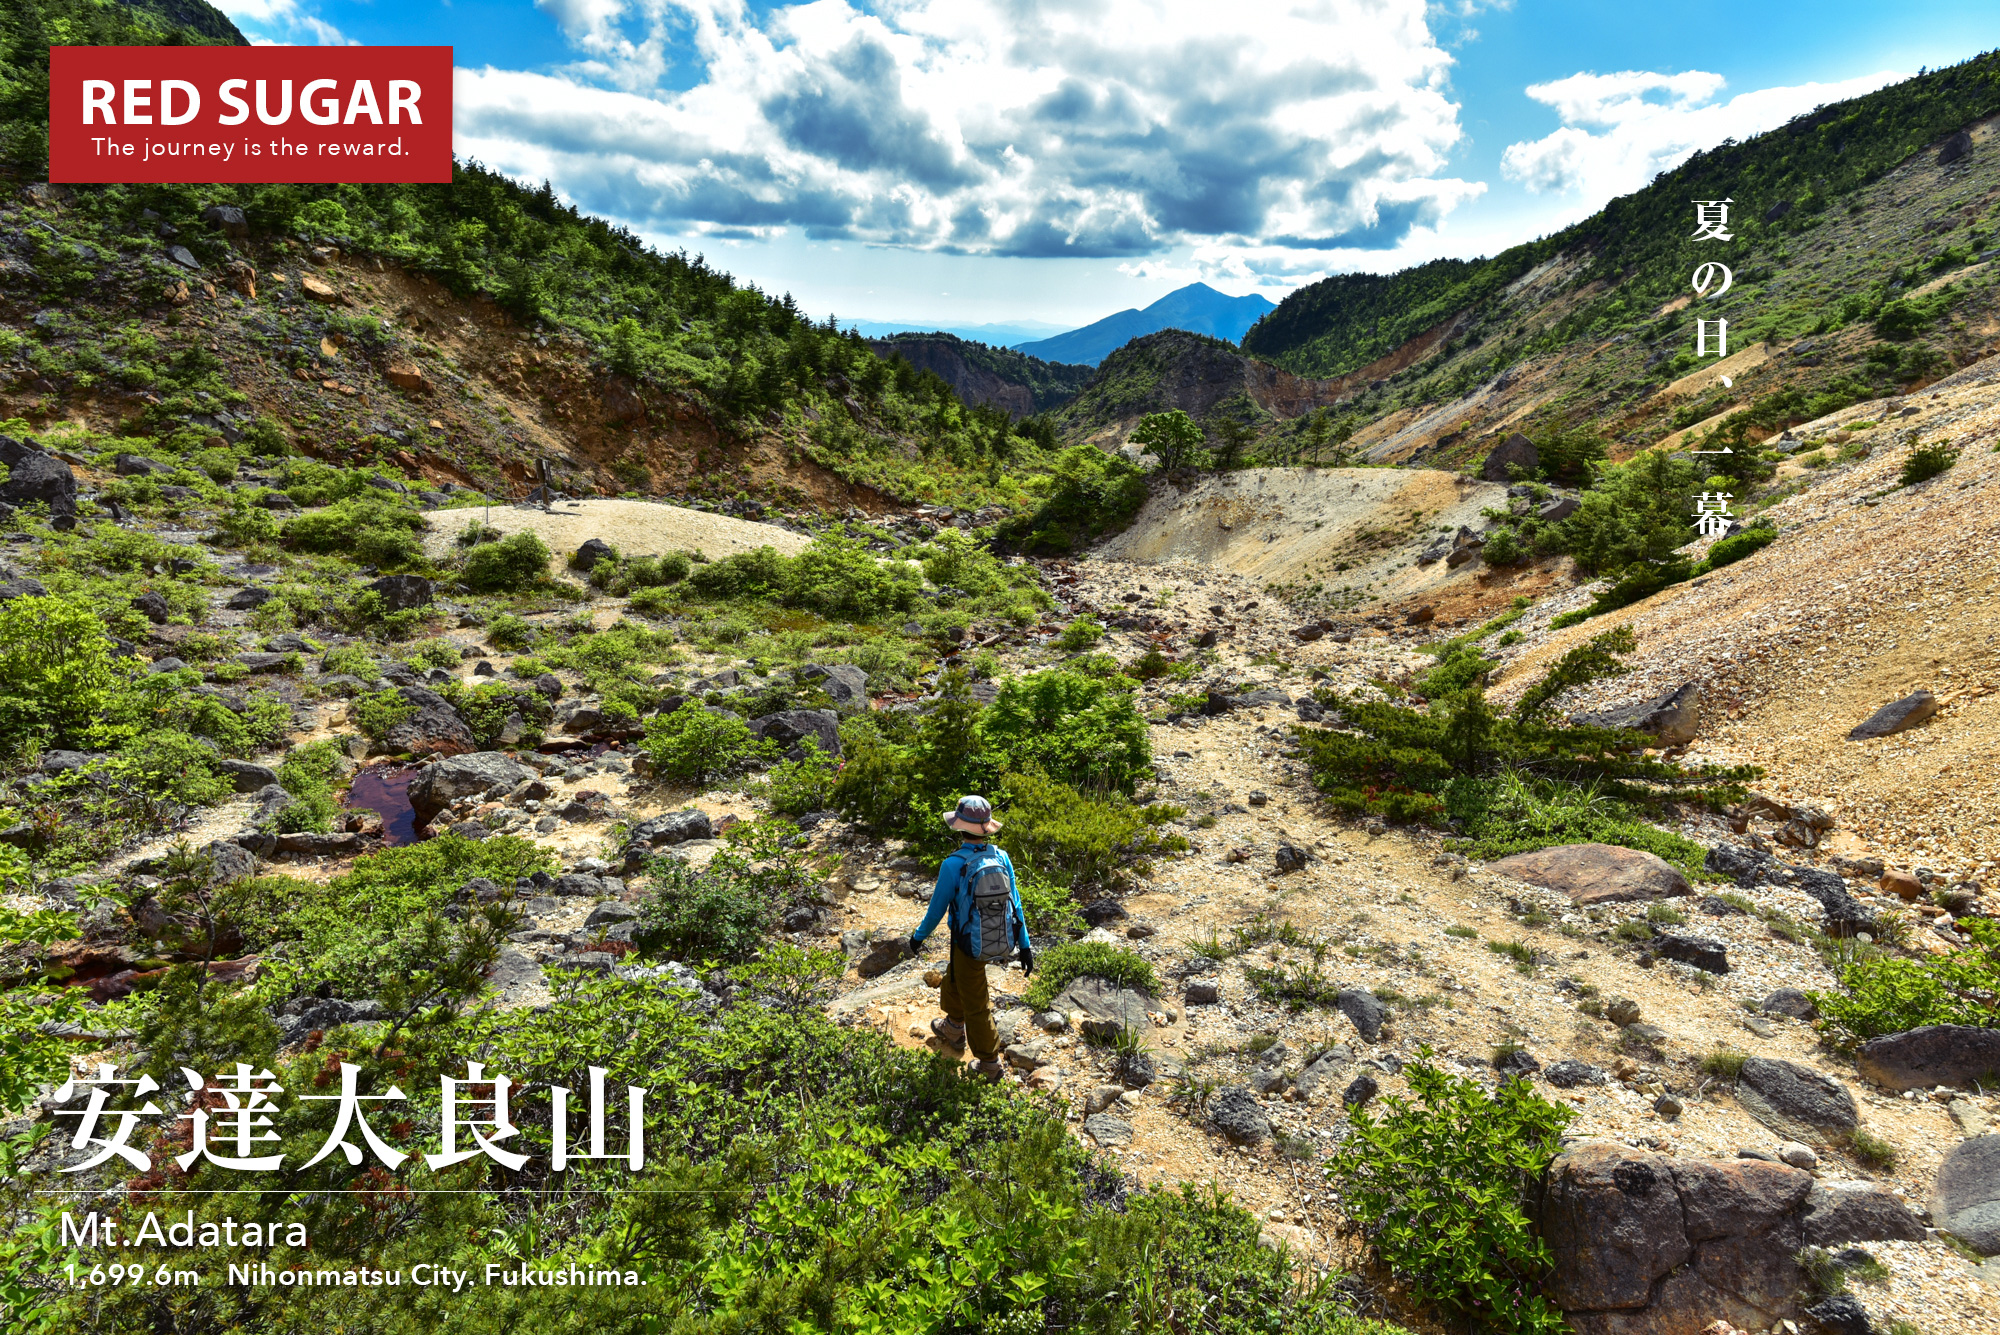 東北 安達太良山 荒涼たる爆裂火口と温泉溢れ出る福島の名峰を歩く旅 Red Sugar